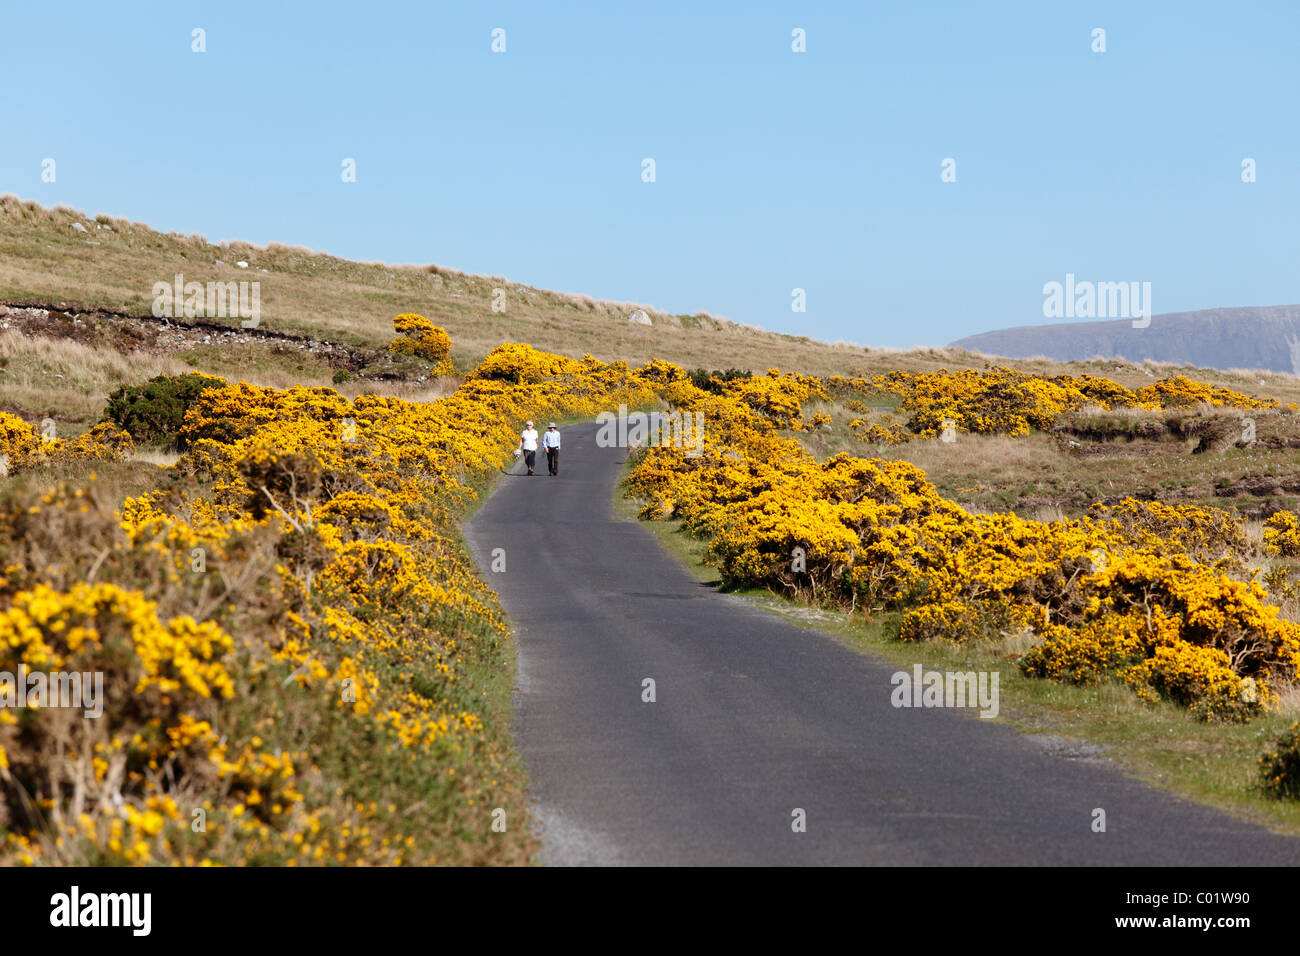 Landstraße und blühenden Ginster in der Nähe von Dooega, Achill Island, County Mayo, Provinz Connacht, Republik Irland, Europa Stockfoto